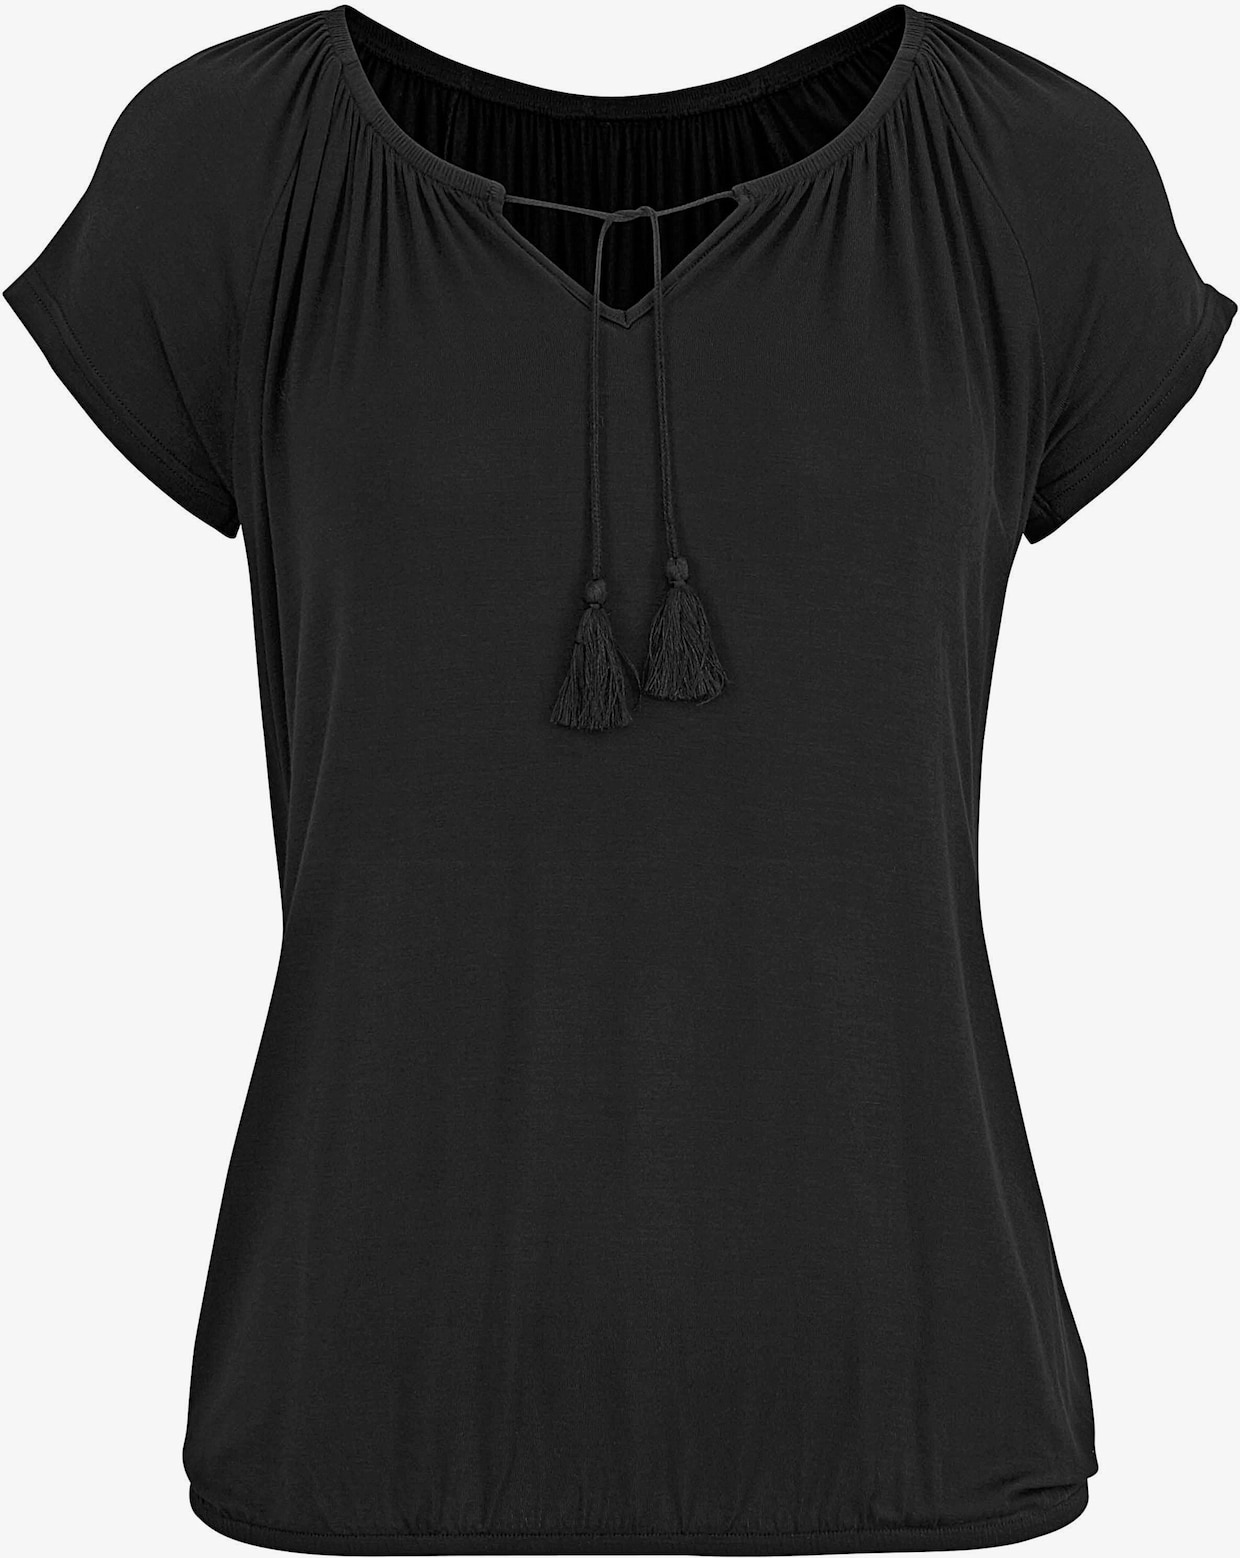 Vivance T-Shirt - bordeaux-gemustert, schwarz